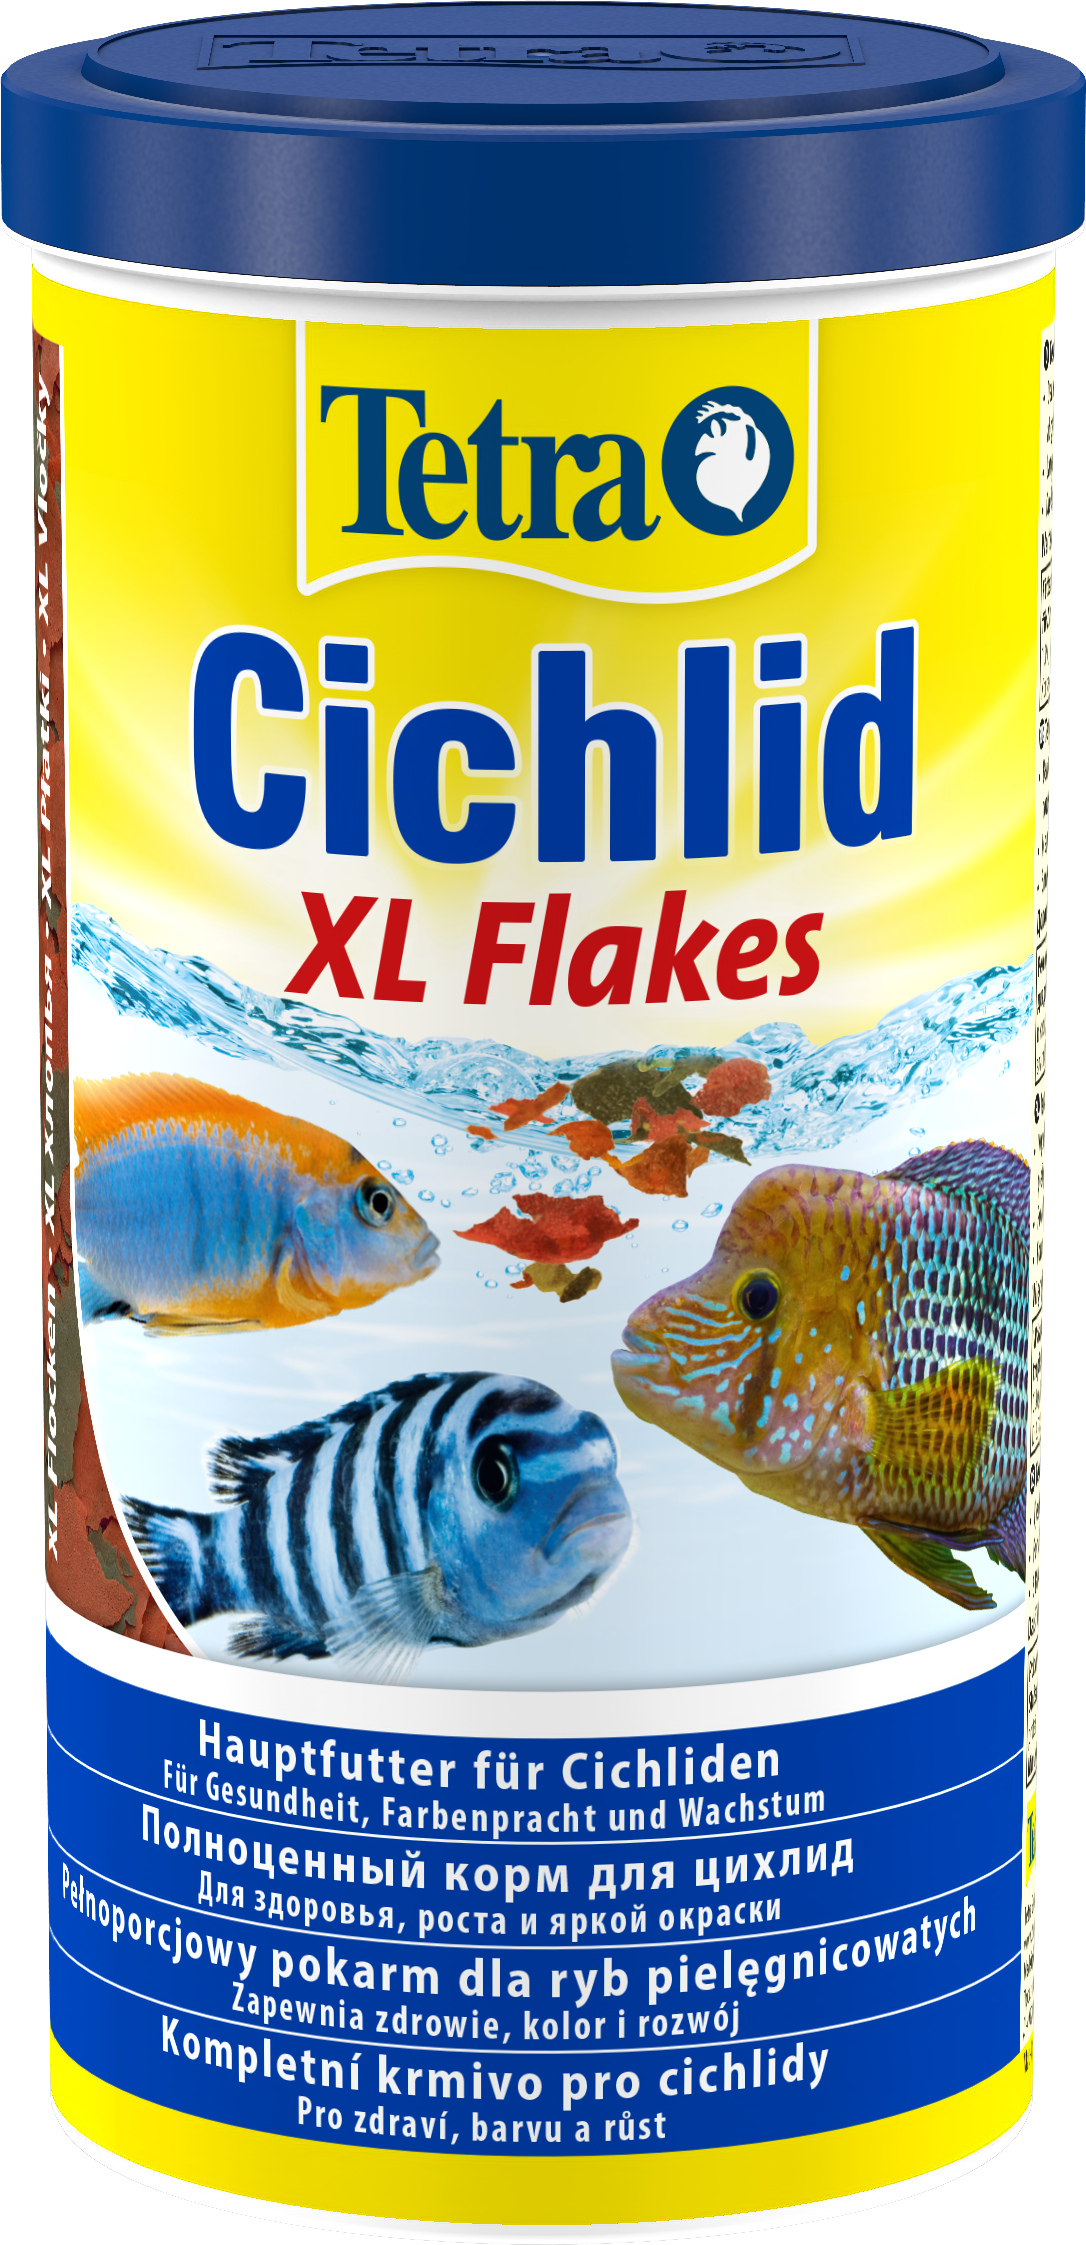 Tetra Cichlid Xl Flakes - Vissenvoer - 3 x 500 ml